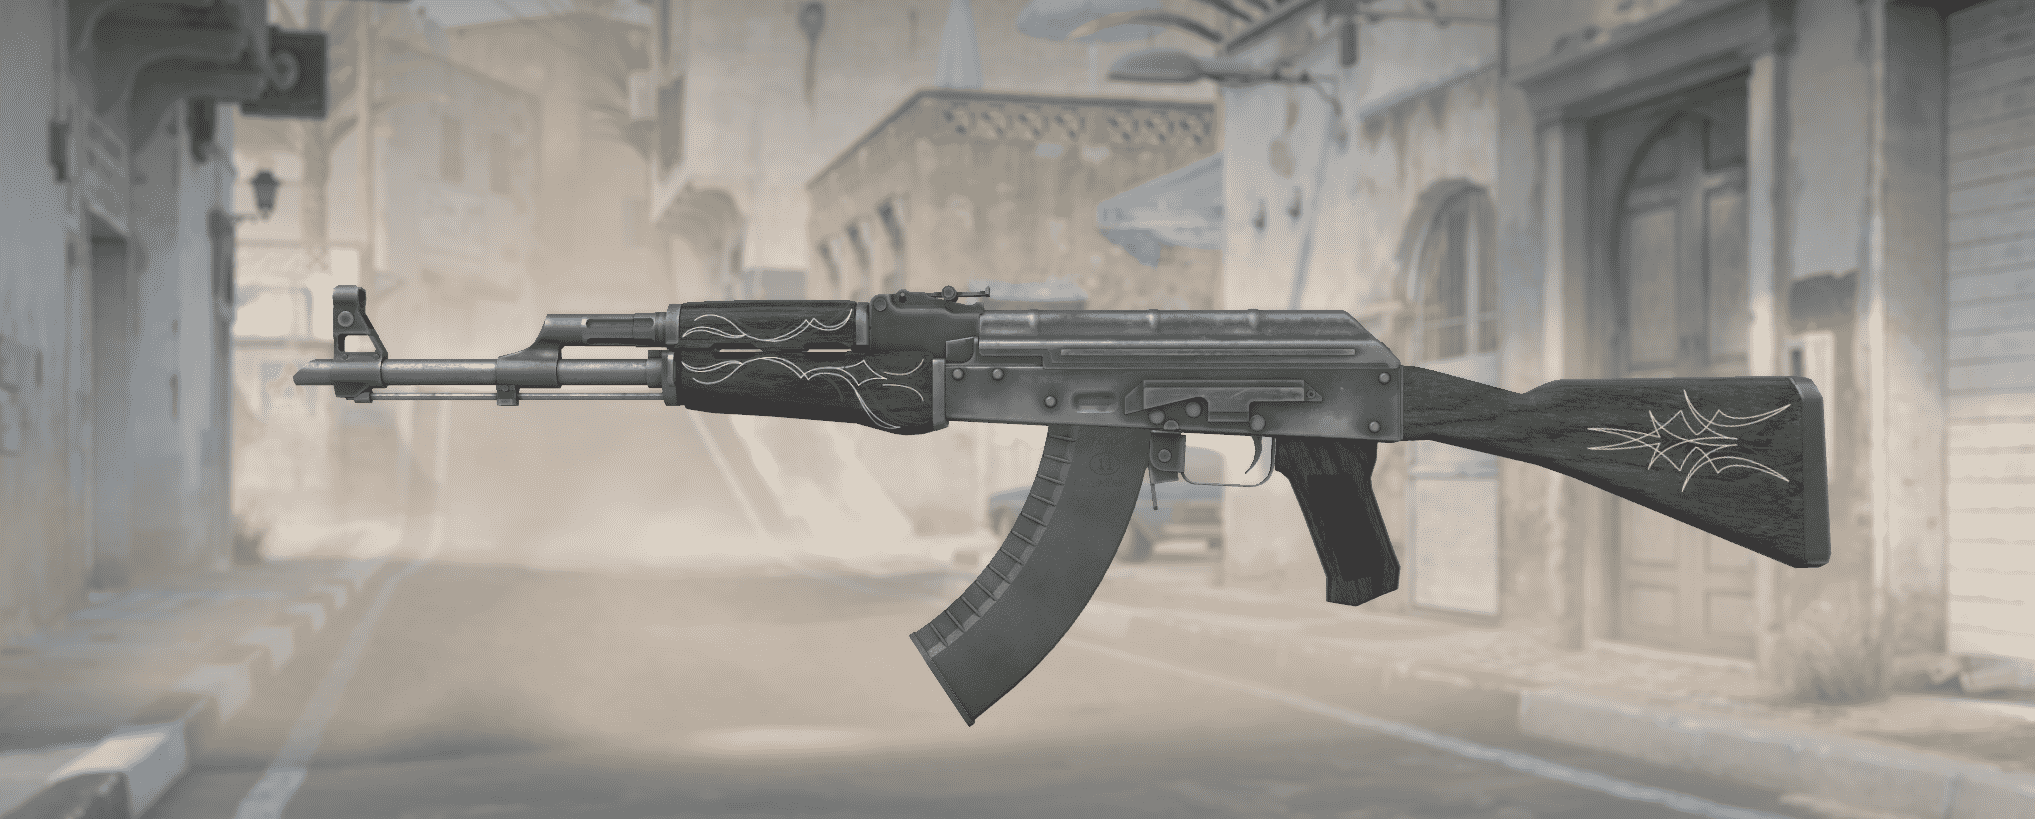 AK-47 Tela rayada esmeralda